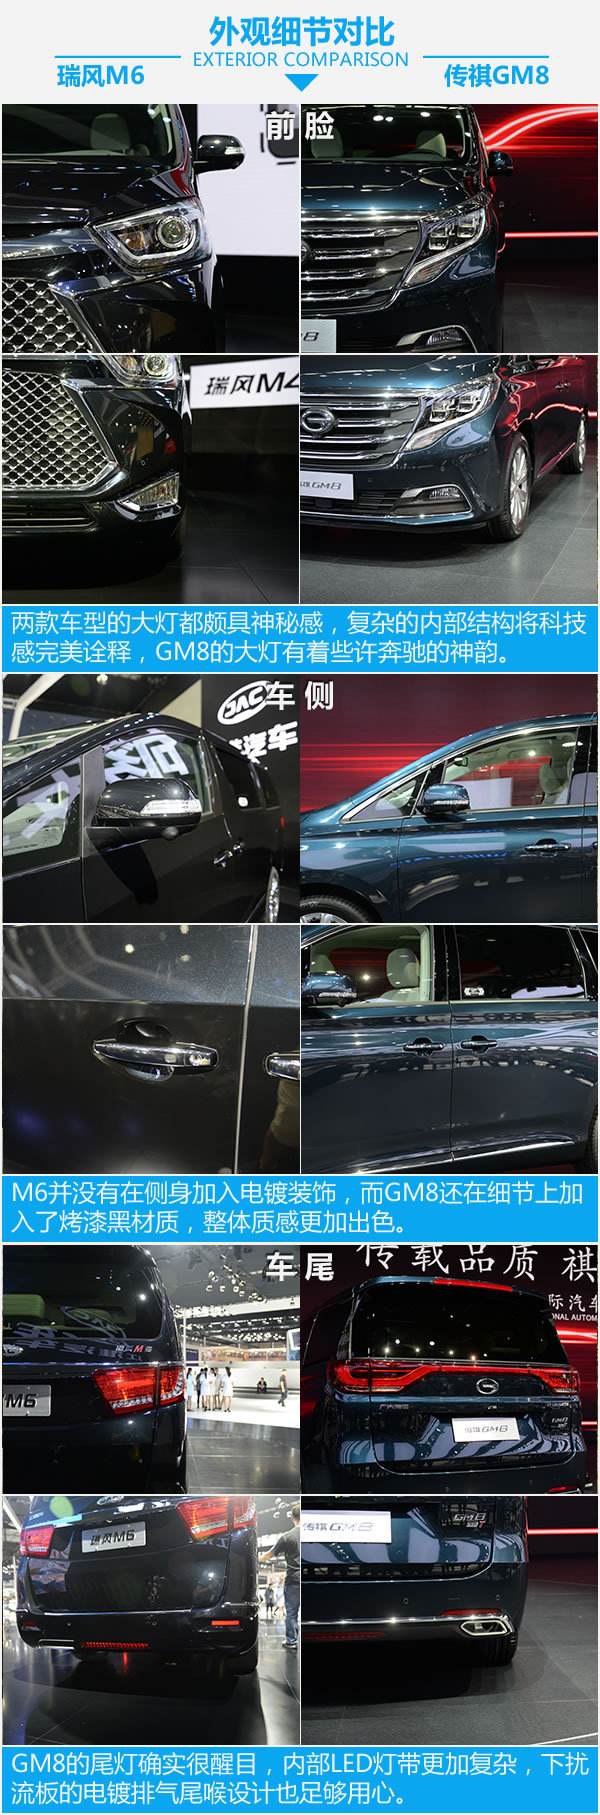 MPV新车硬碰硬 江淮瑞风M6对比广汽传祺GM8-图5